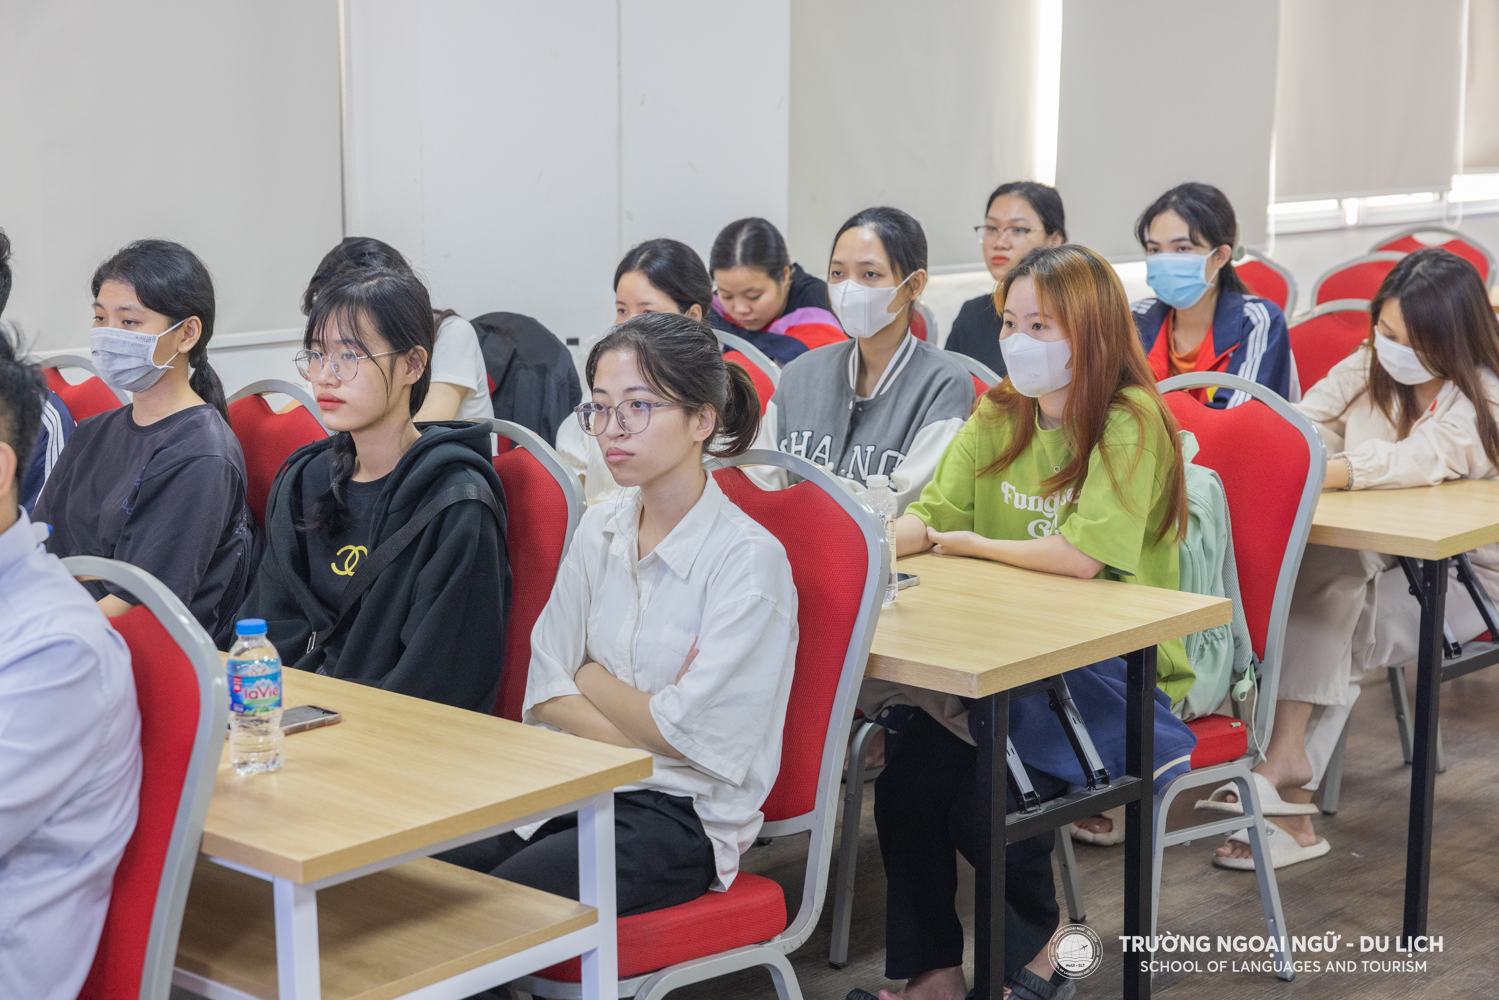 Hội thảo triển khai chương trình thực tập tốt nghiệp Nhật Bản cho sinh viên Đại học khóa 15, 16 ngành Ngôn ngữ Nhật Bản, Ngôn ngữ Anh